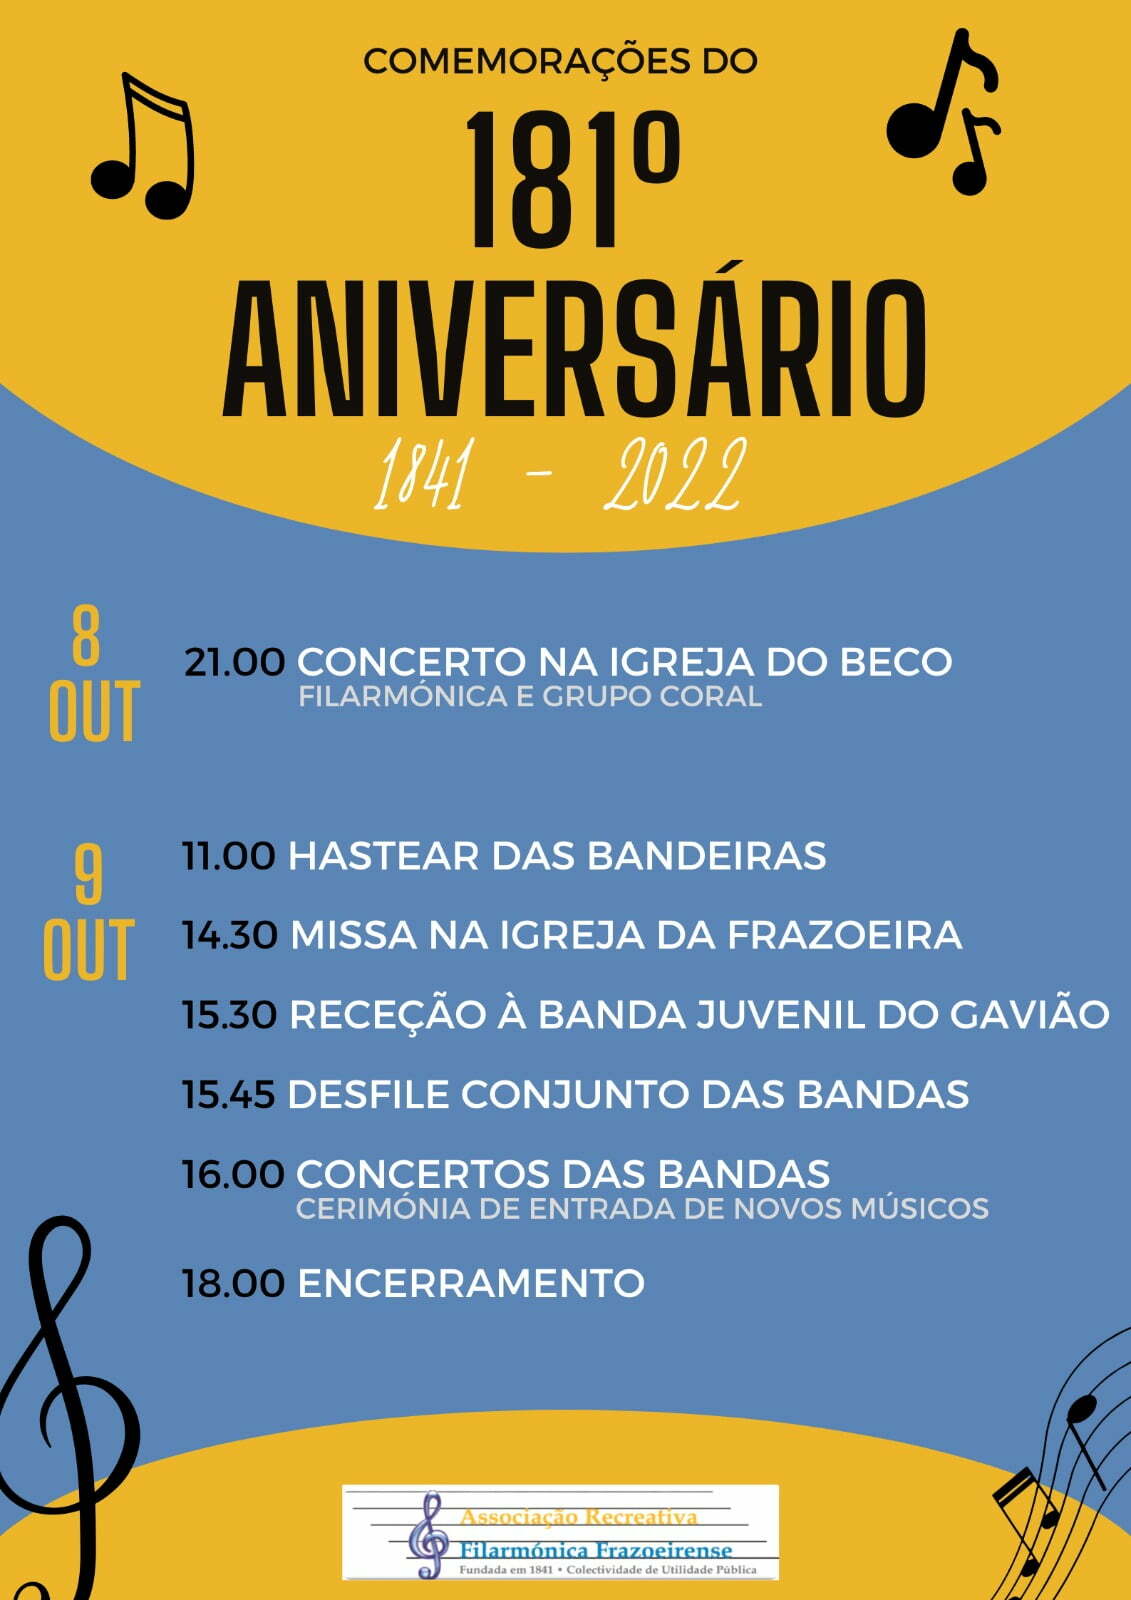 Comemorações do 181º Aniversário da Filarmónica Frazoeirense